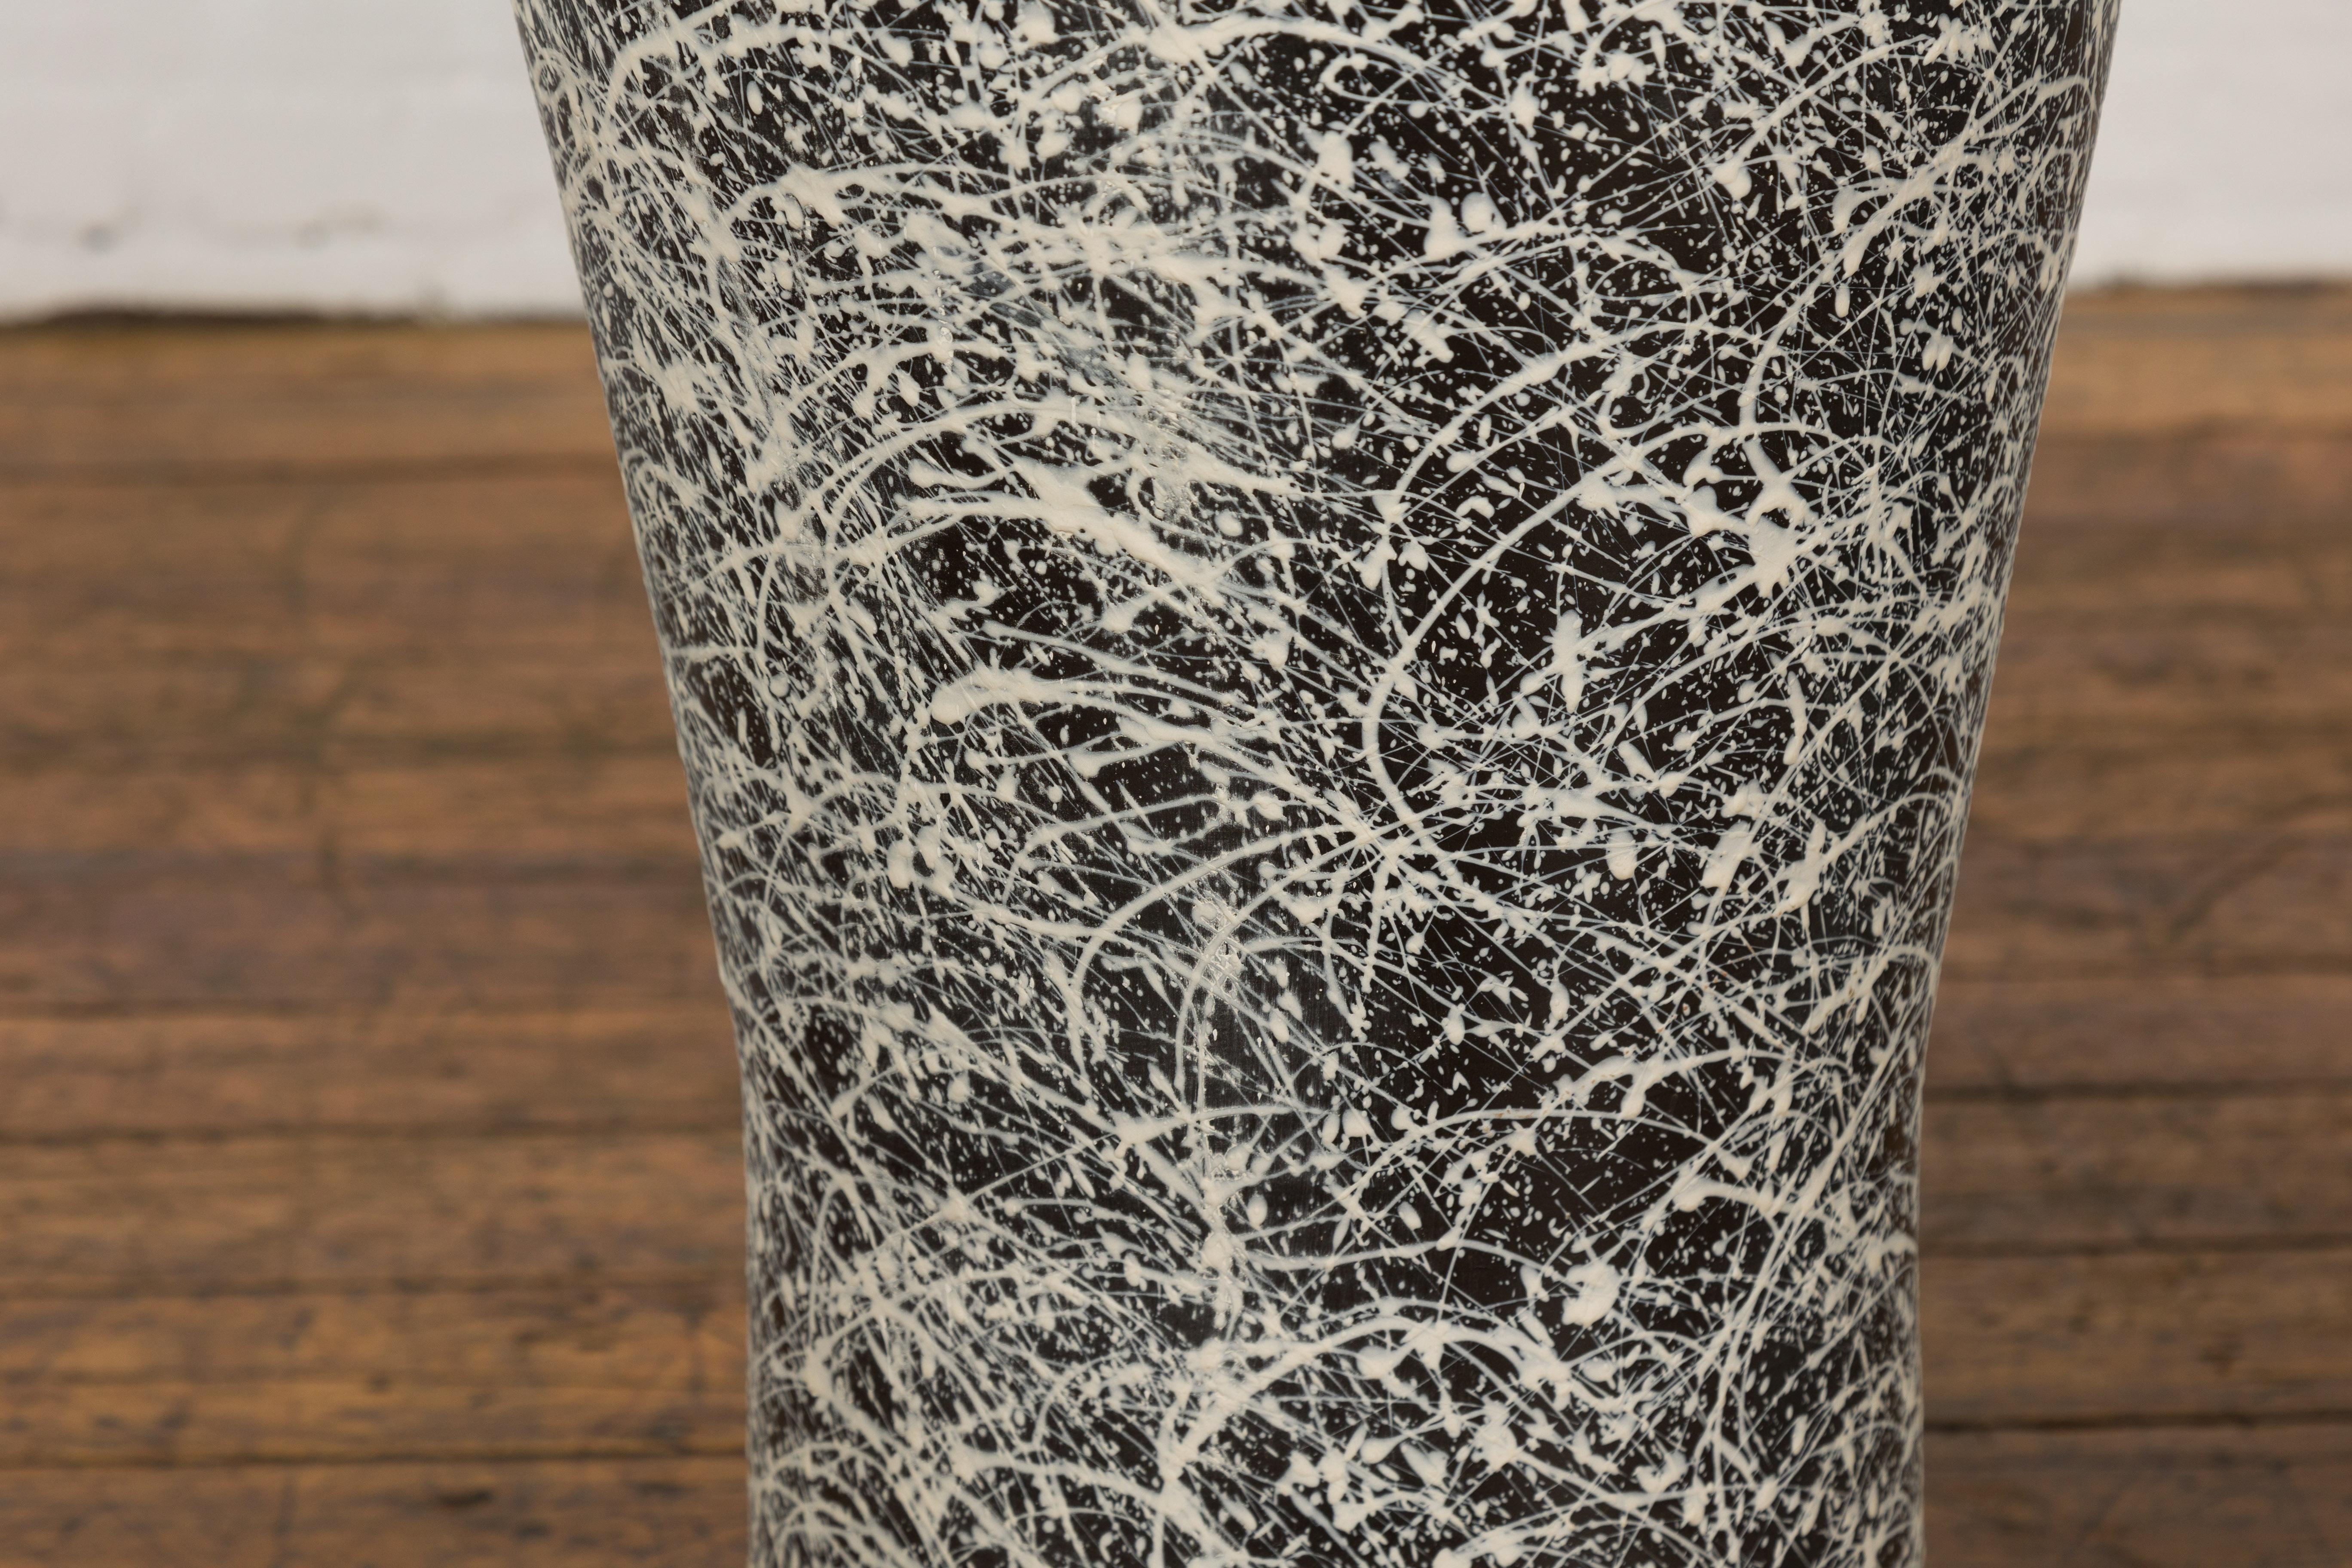 Pair of Textured Black & White Spattered Ceramic Vases For Sale 7